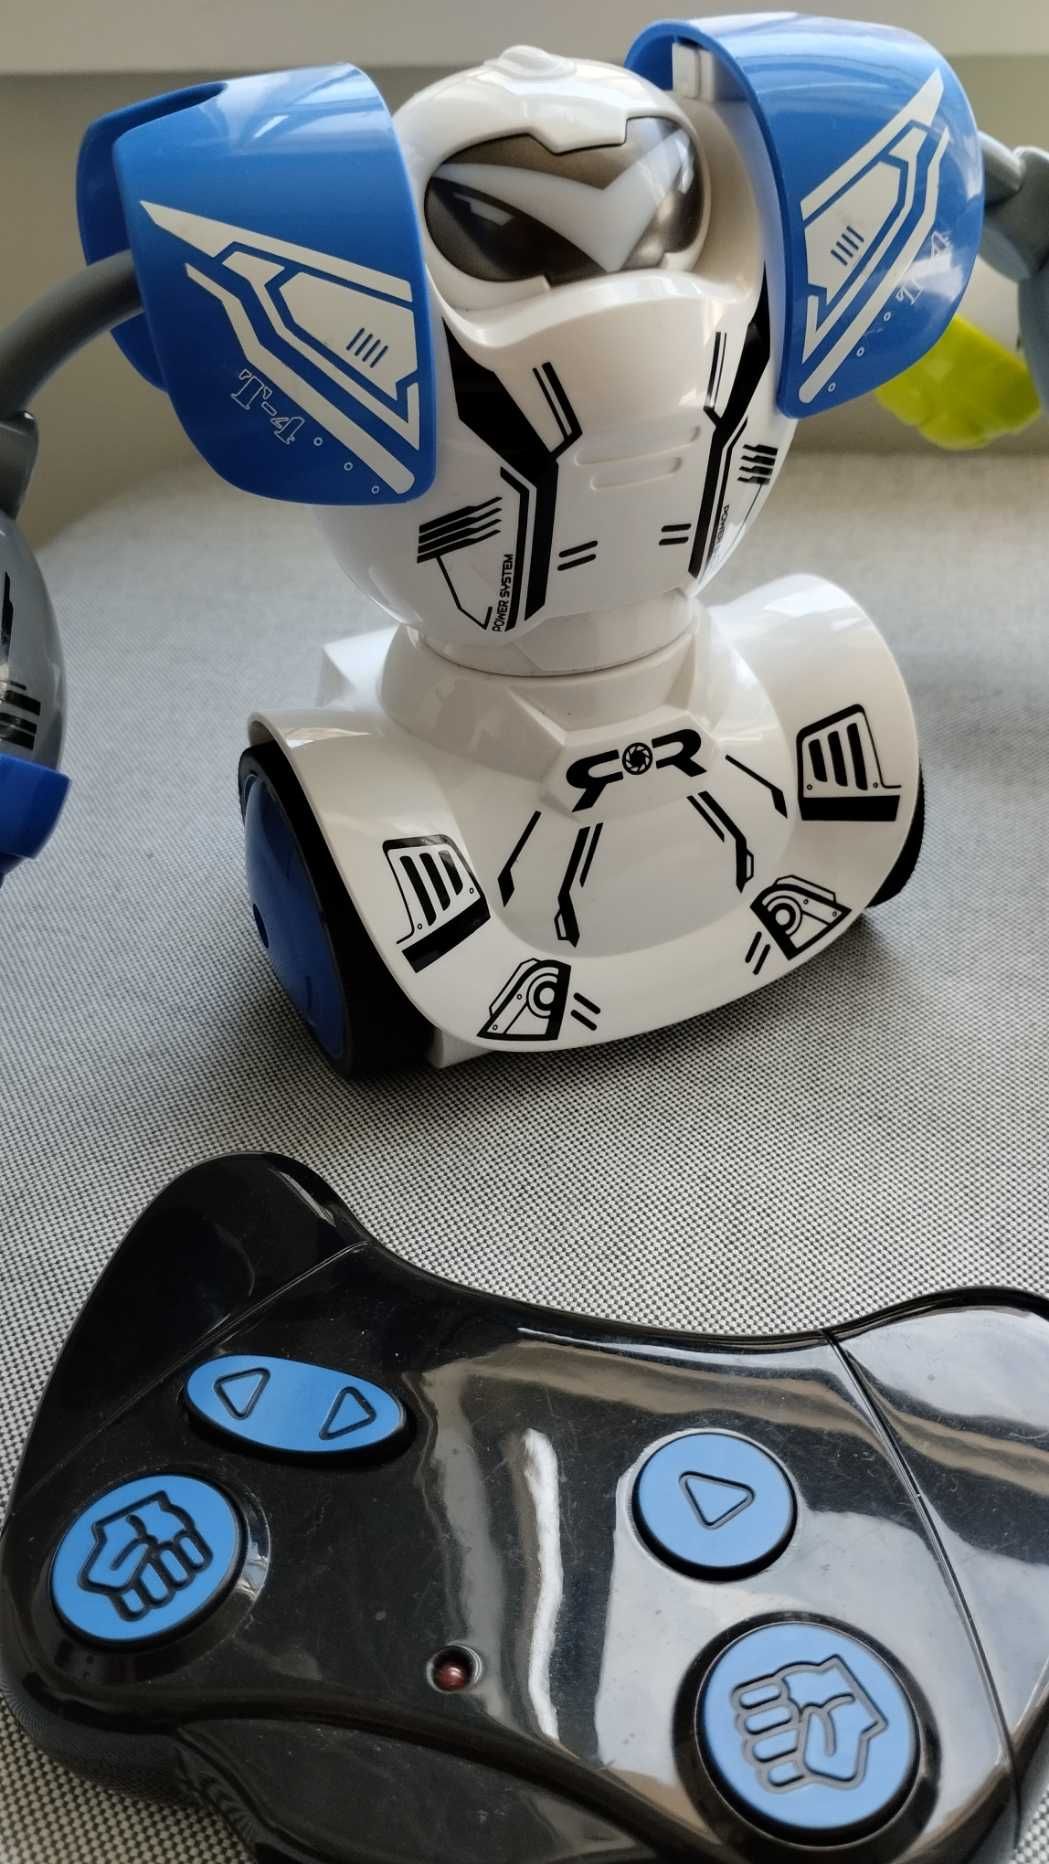 YCOO - Robo Kombat Duplo, ROBOTS